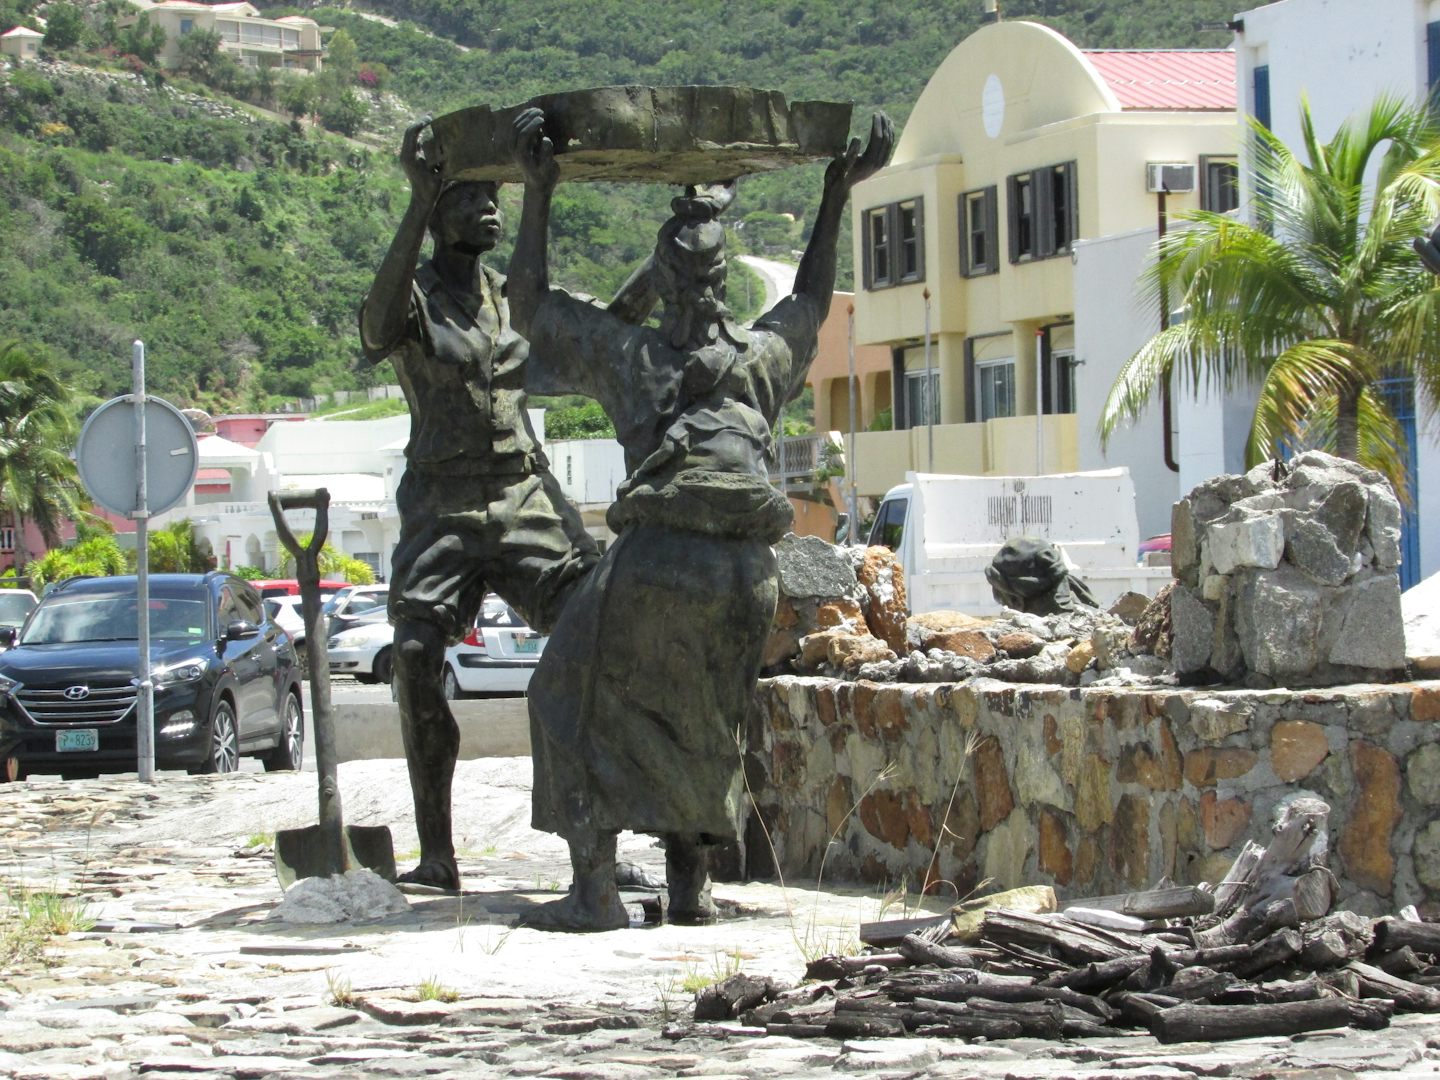 Salt Tribute Statue in Center of St Maarten